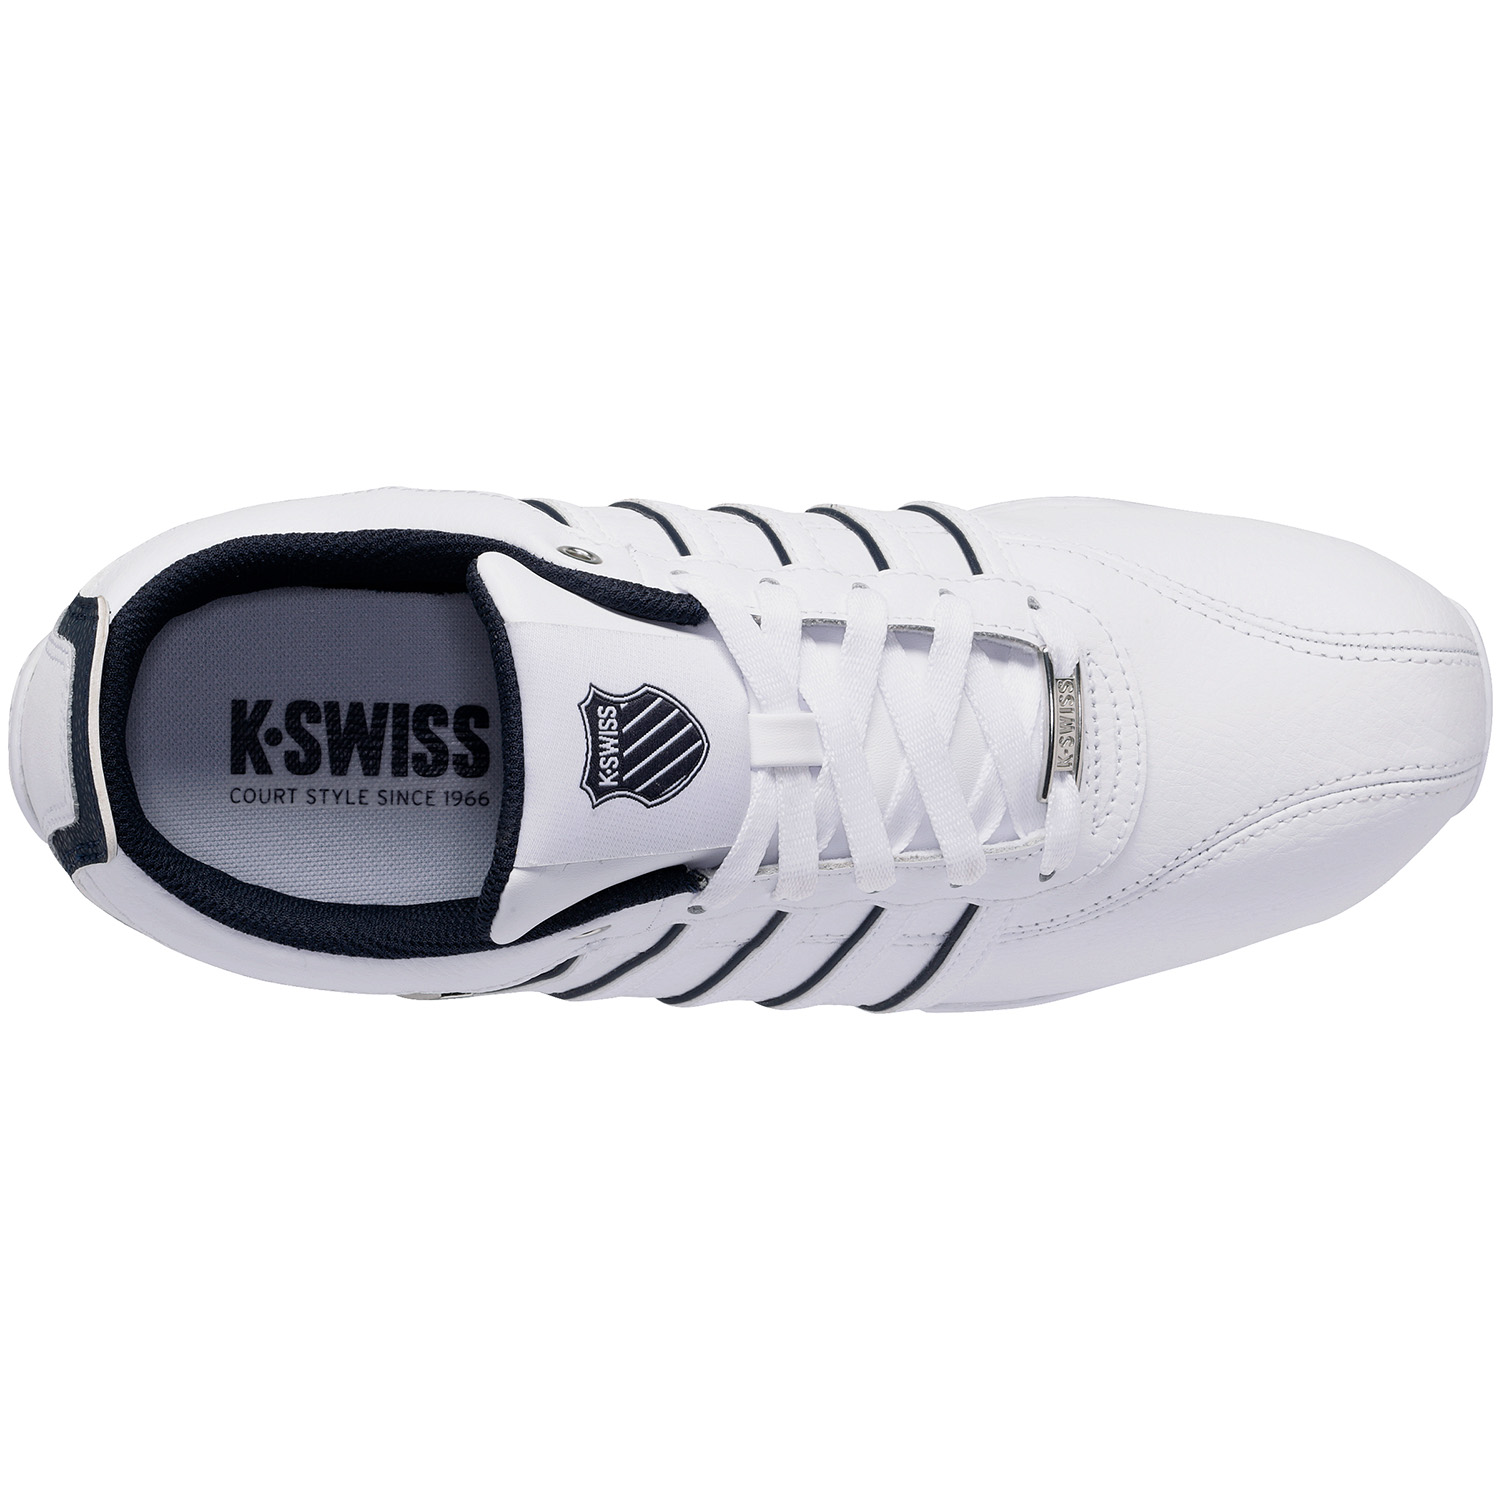 K-SWISS Arvee 1.5 Herren Sneaker Sportschuhe 02453-909-M Weiß/Blau